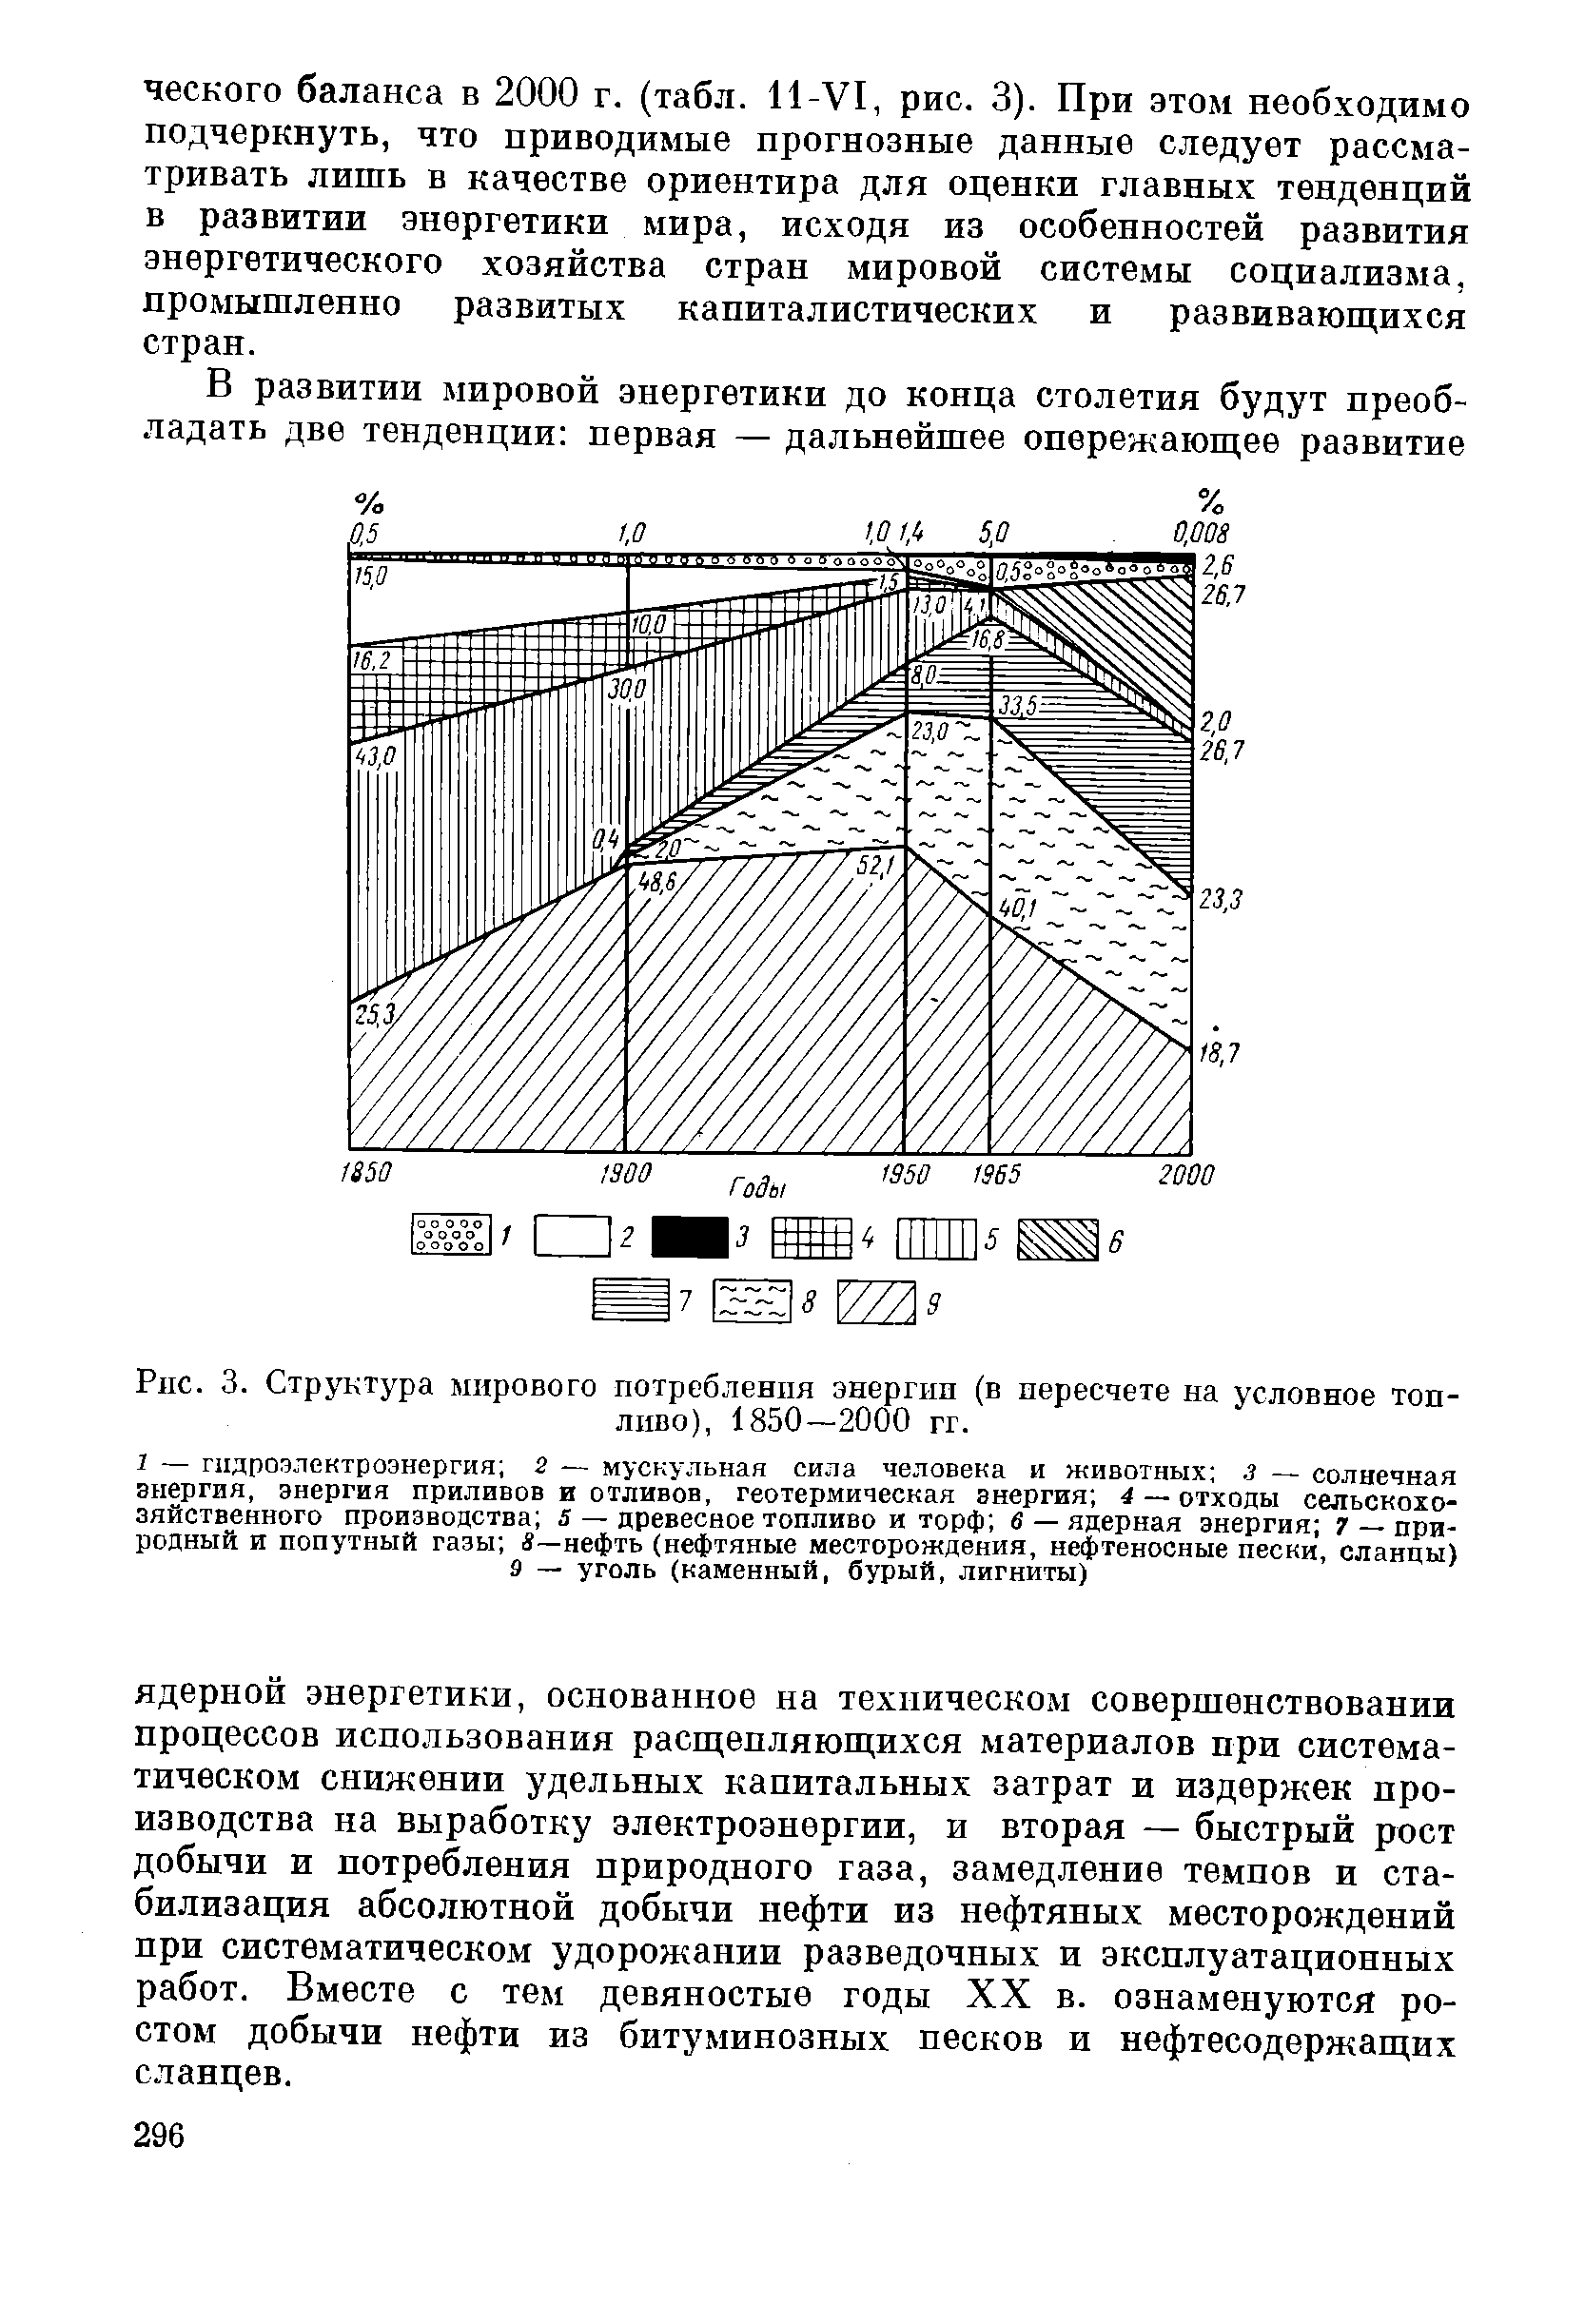 Рис. 3. Структура мирового потребления энергии (в пересчете на условное топливо), 1850—2000 гг.